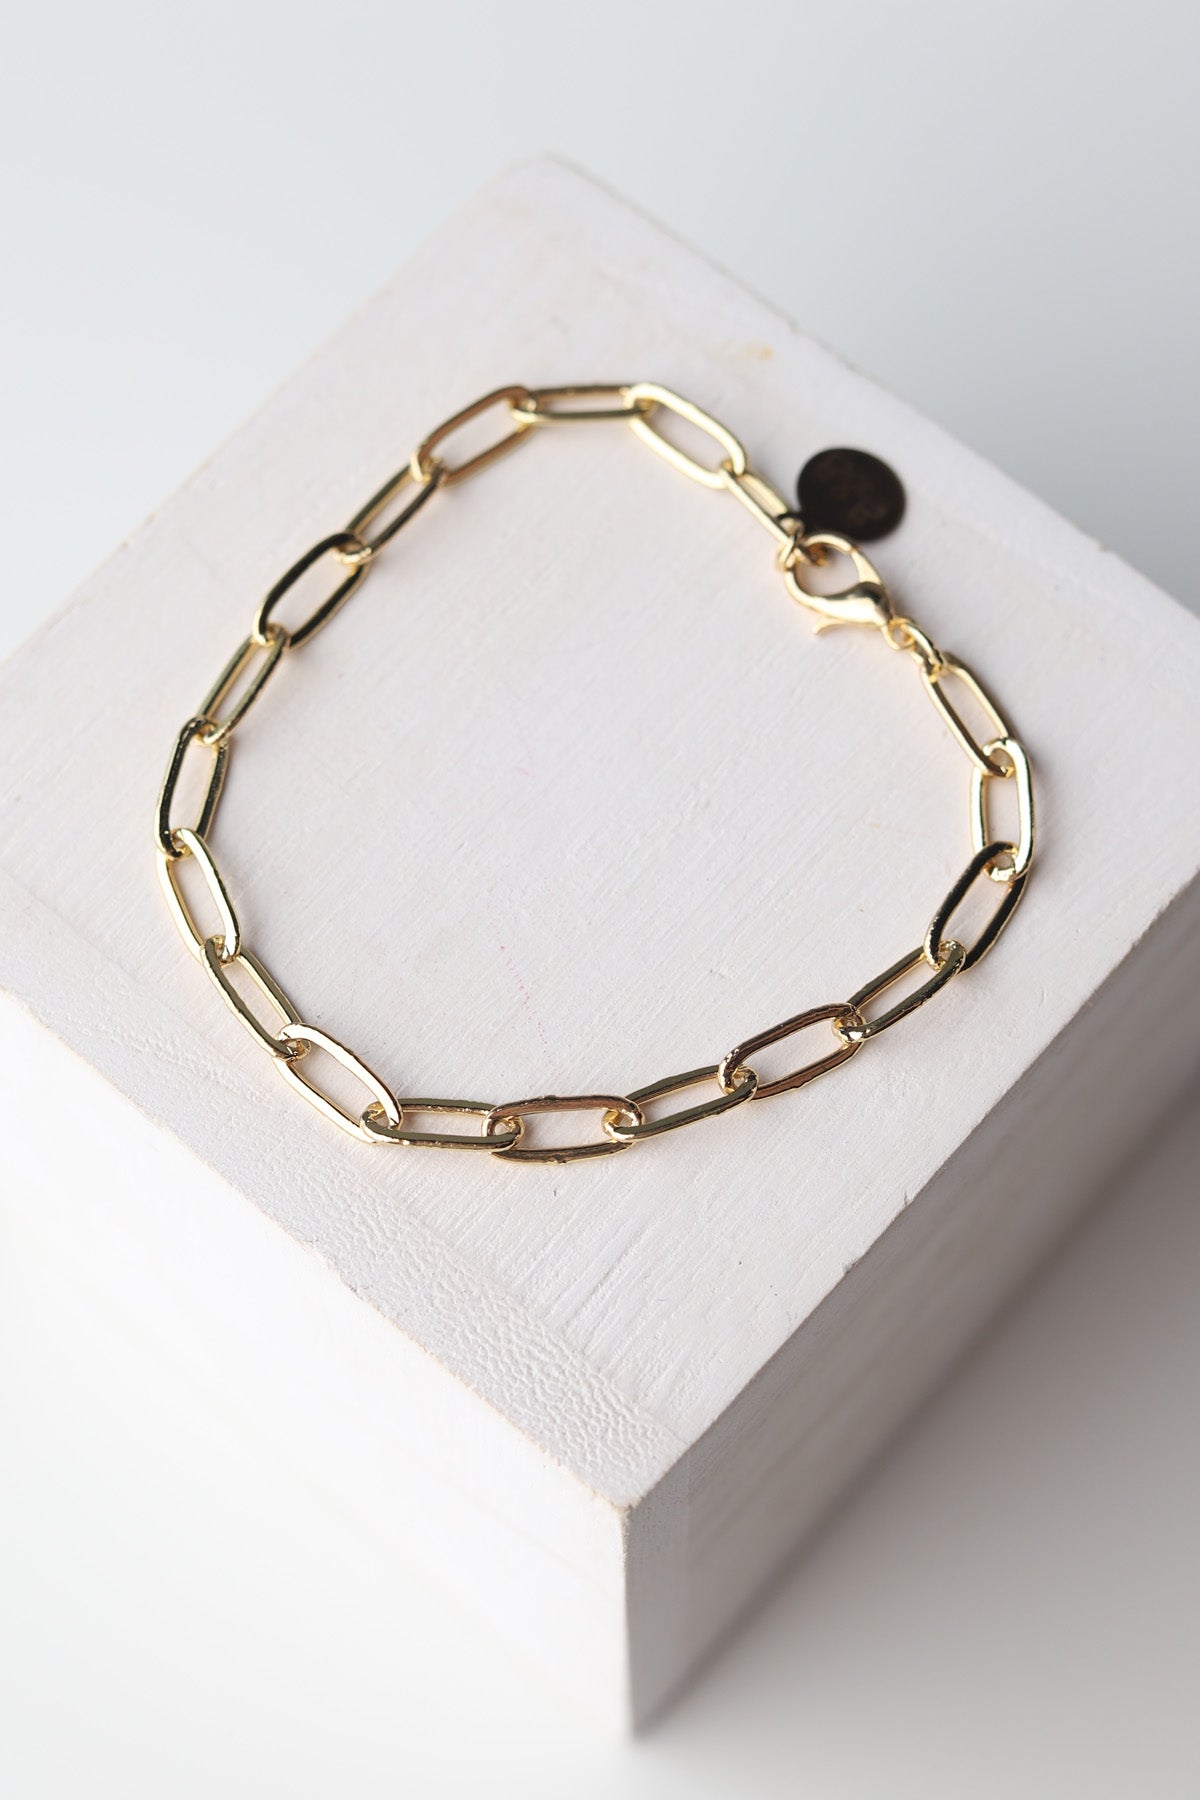 Paperclip Chain Bracelet - Gold - Baubles + Bobbies